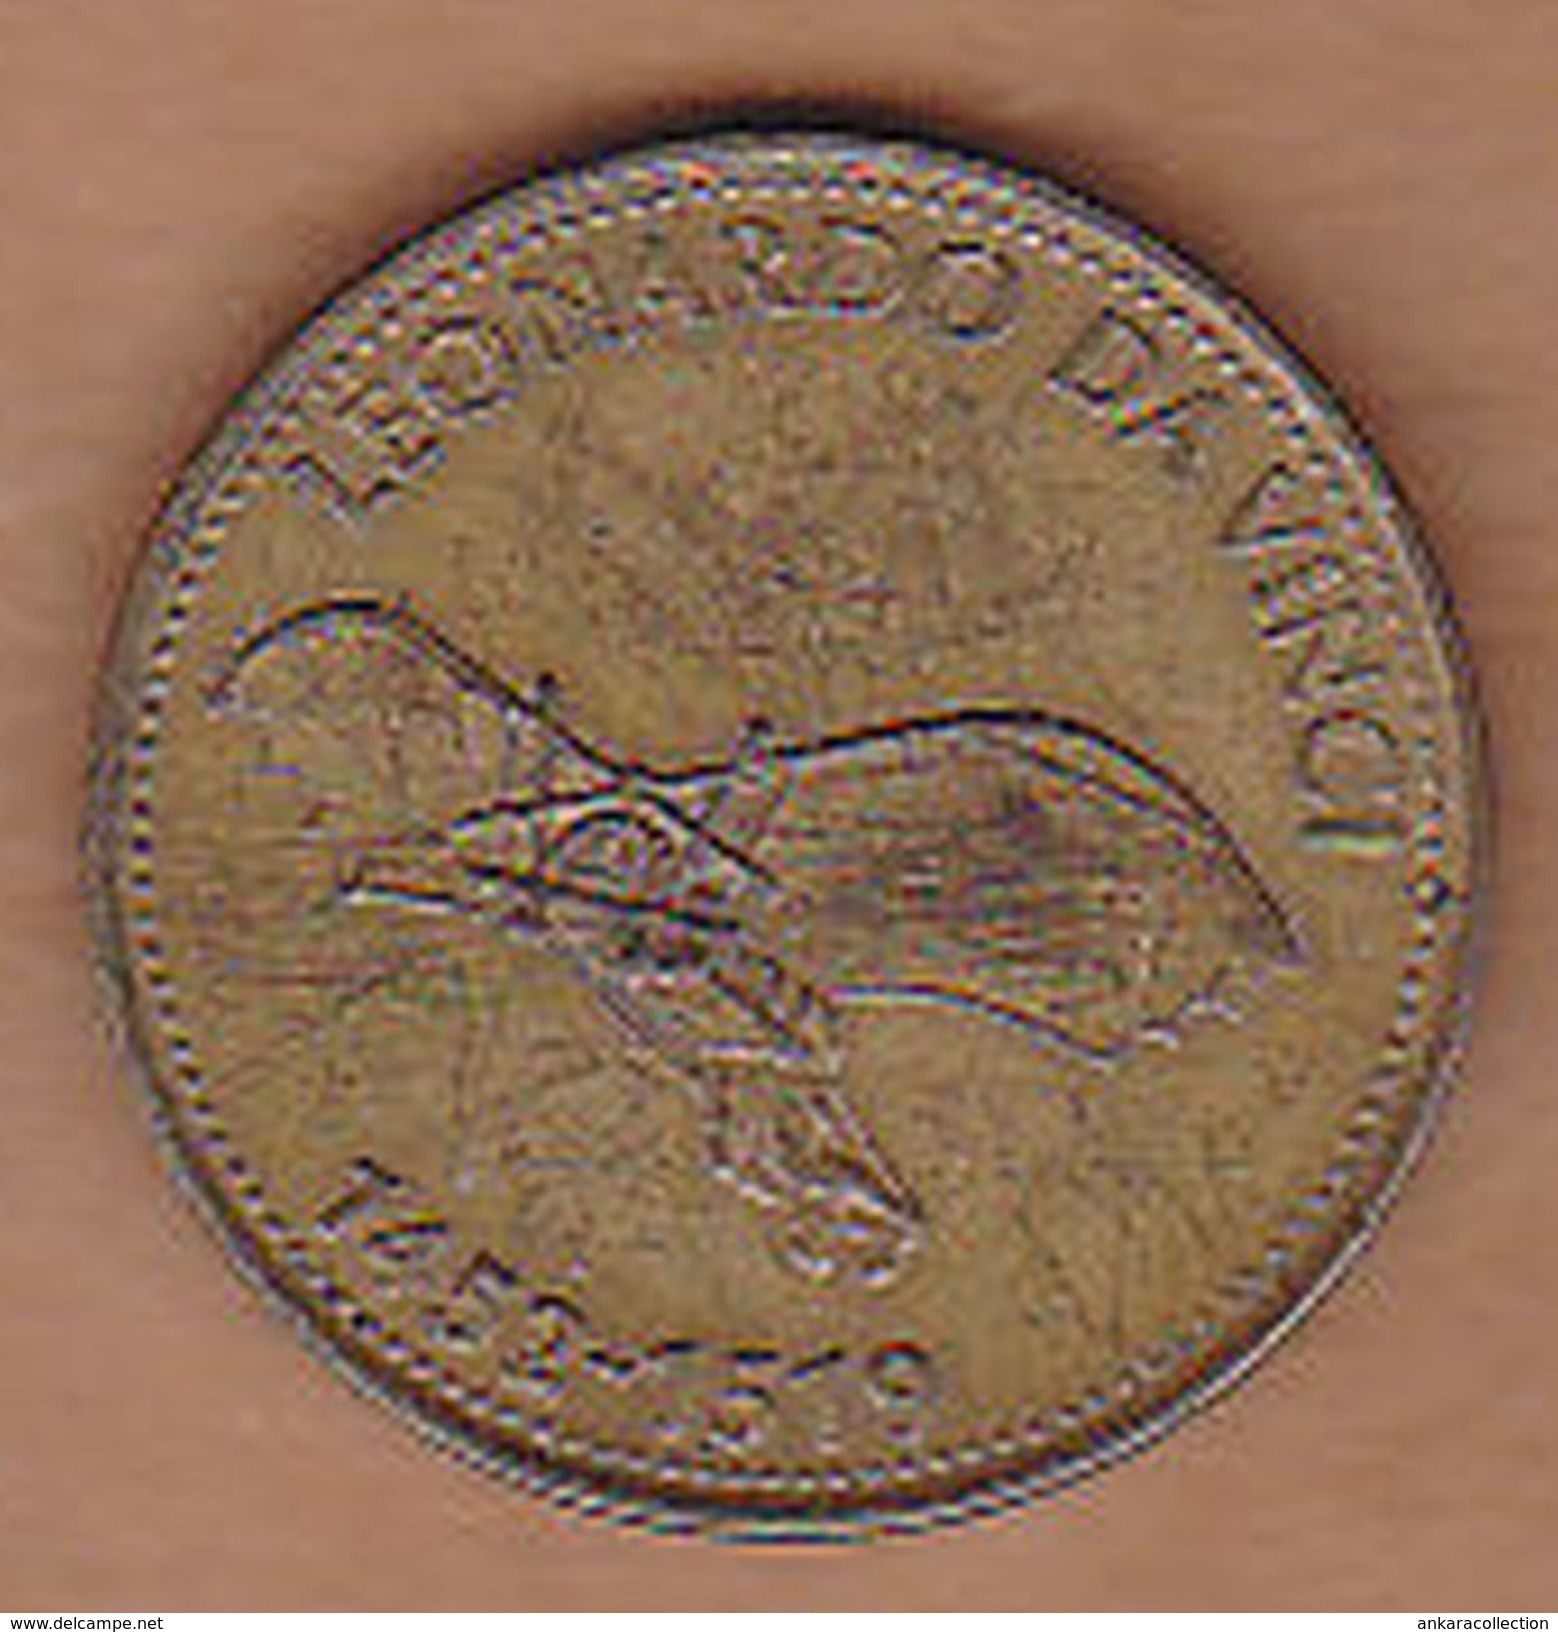 AC -  LEONARDO DA VINCI 1452 - 1519 SHELL TOKEN - JETON - Monedas / De Necesidad